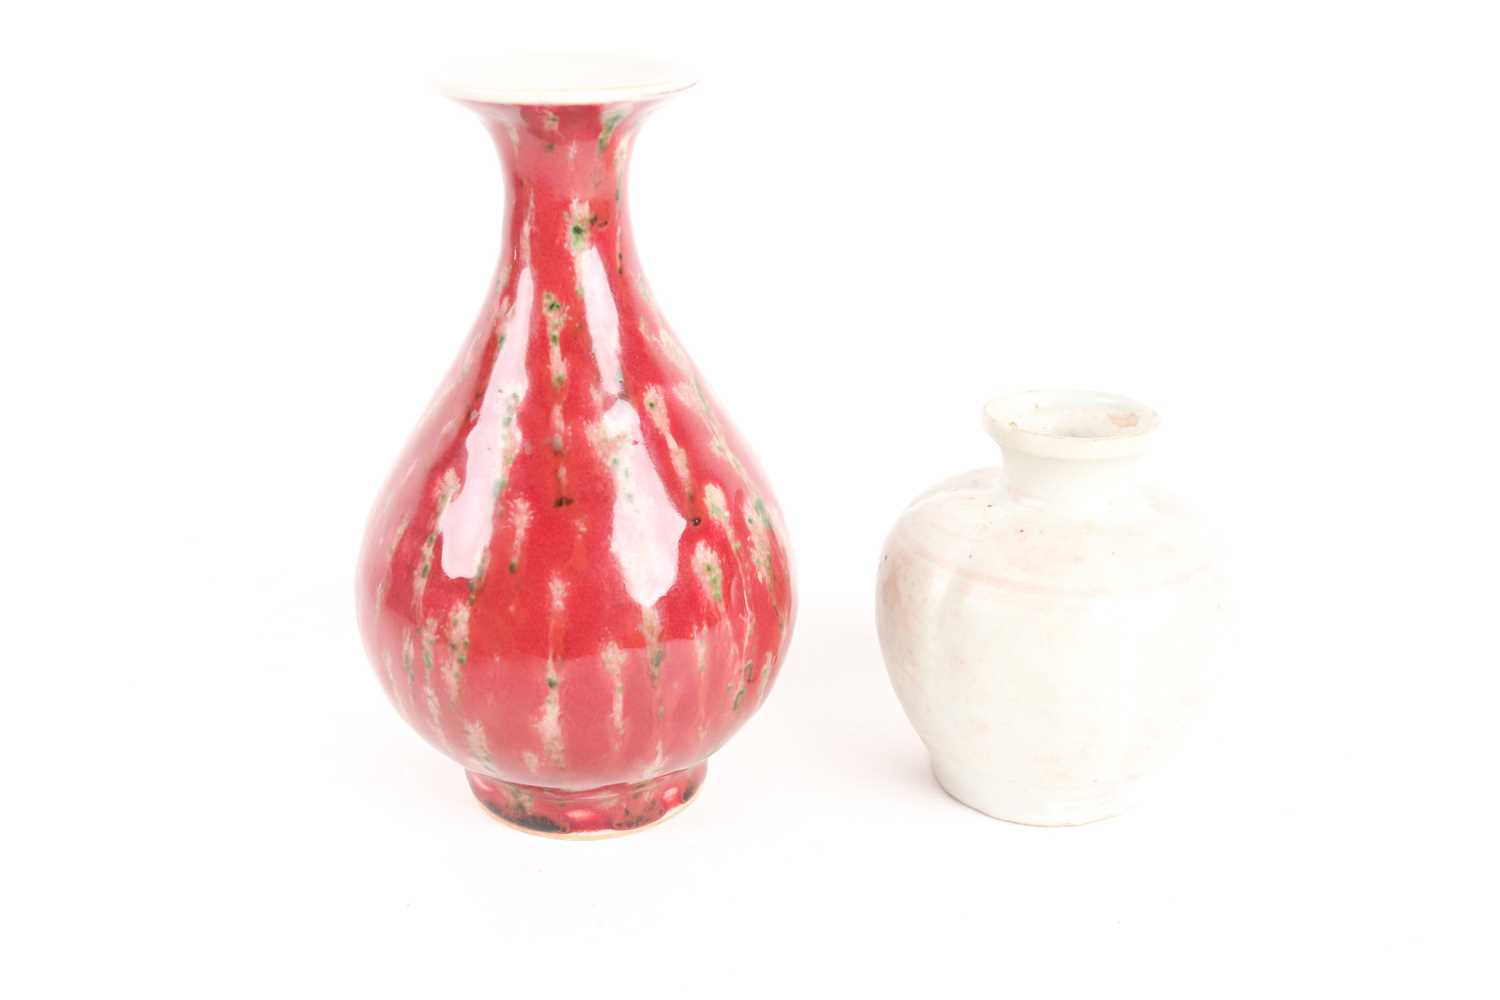 A Chinese white glazed segmented globular vase, Song dynasty, painted with underglaze red decoration - Image 4 of 6